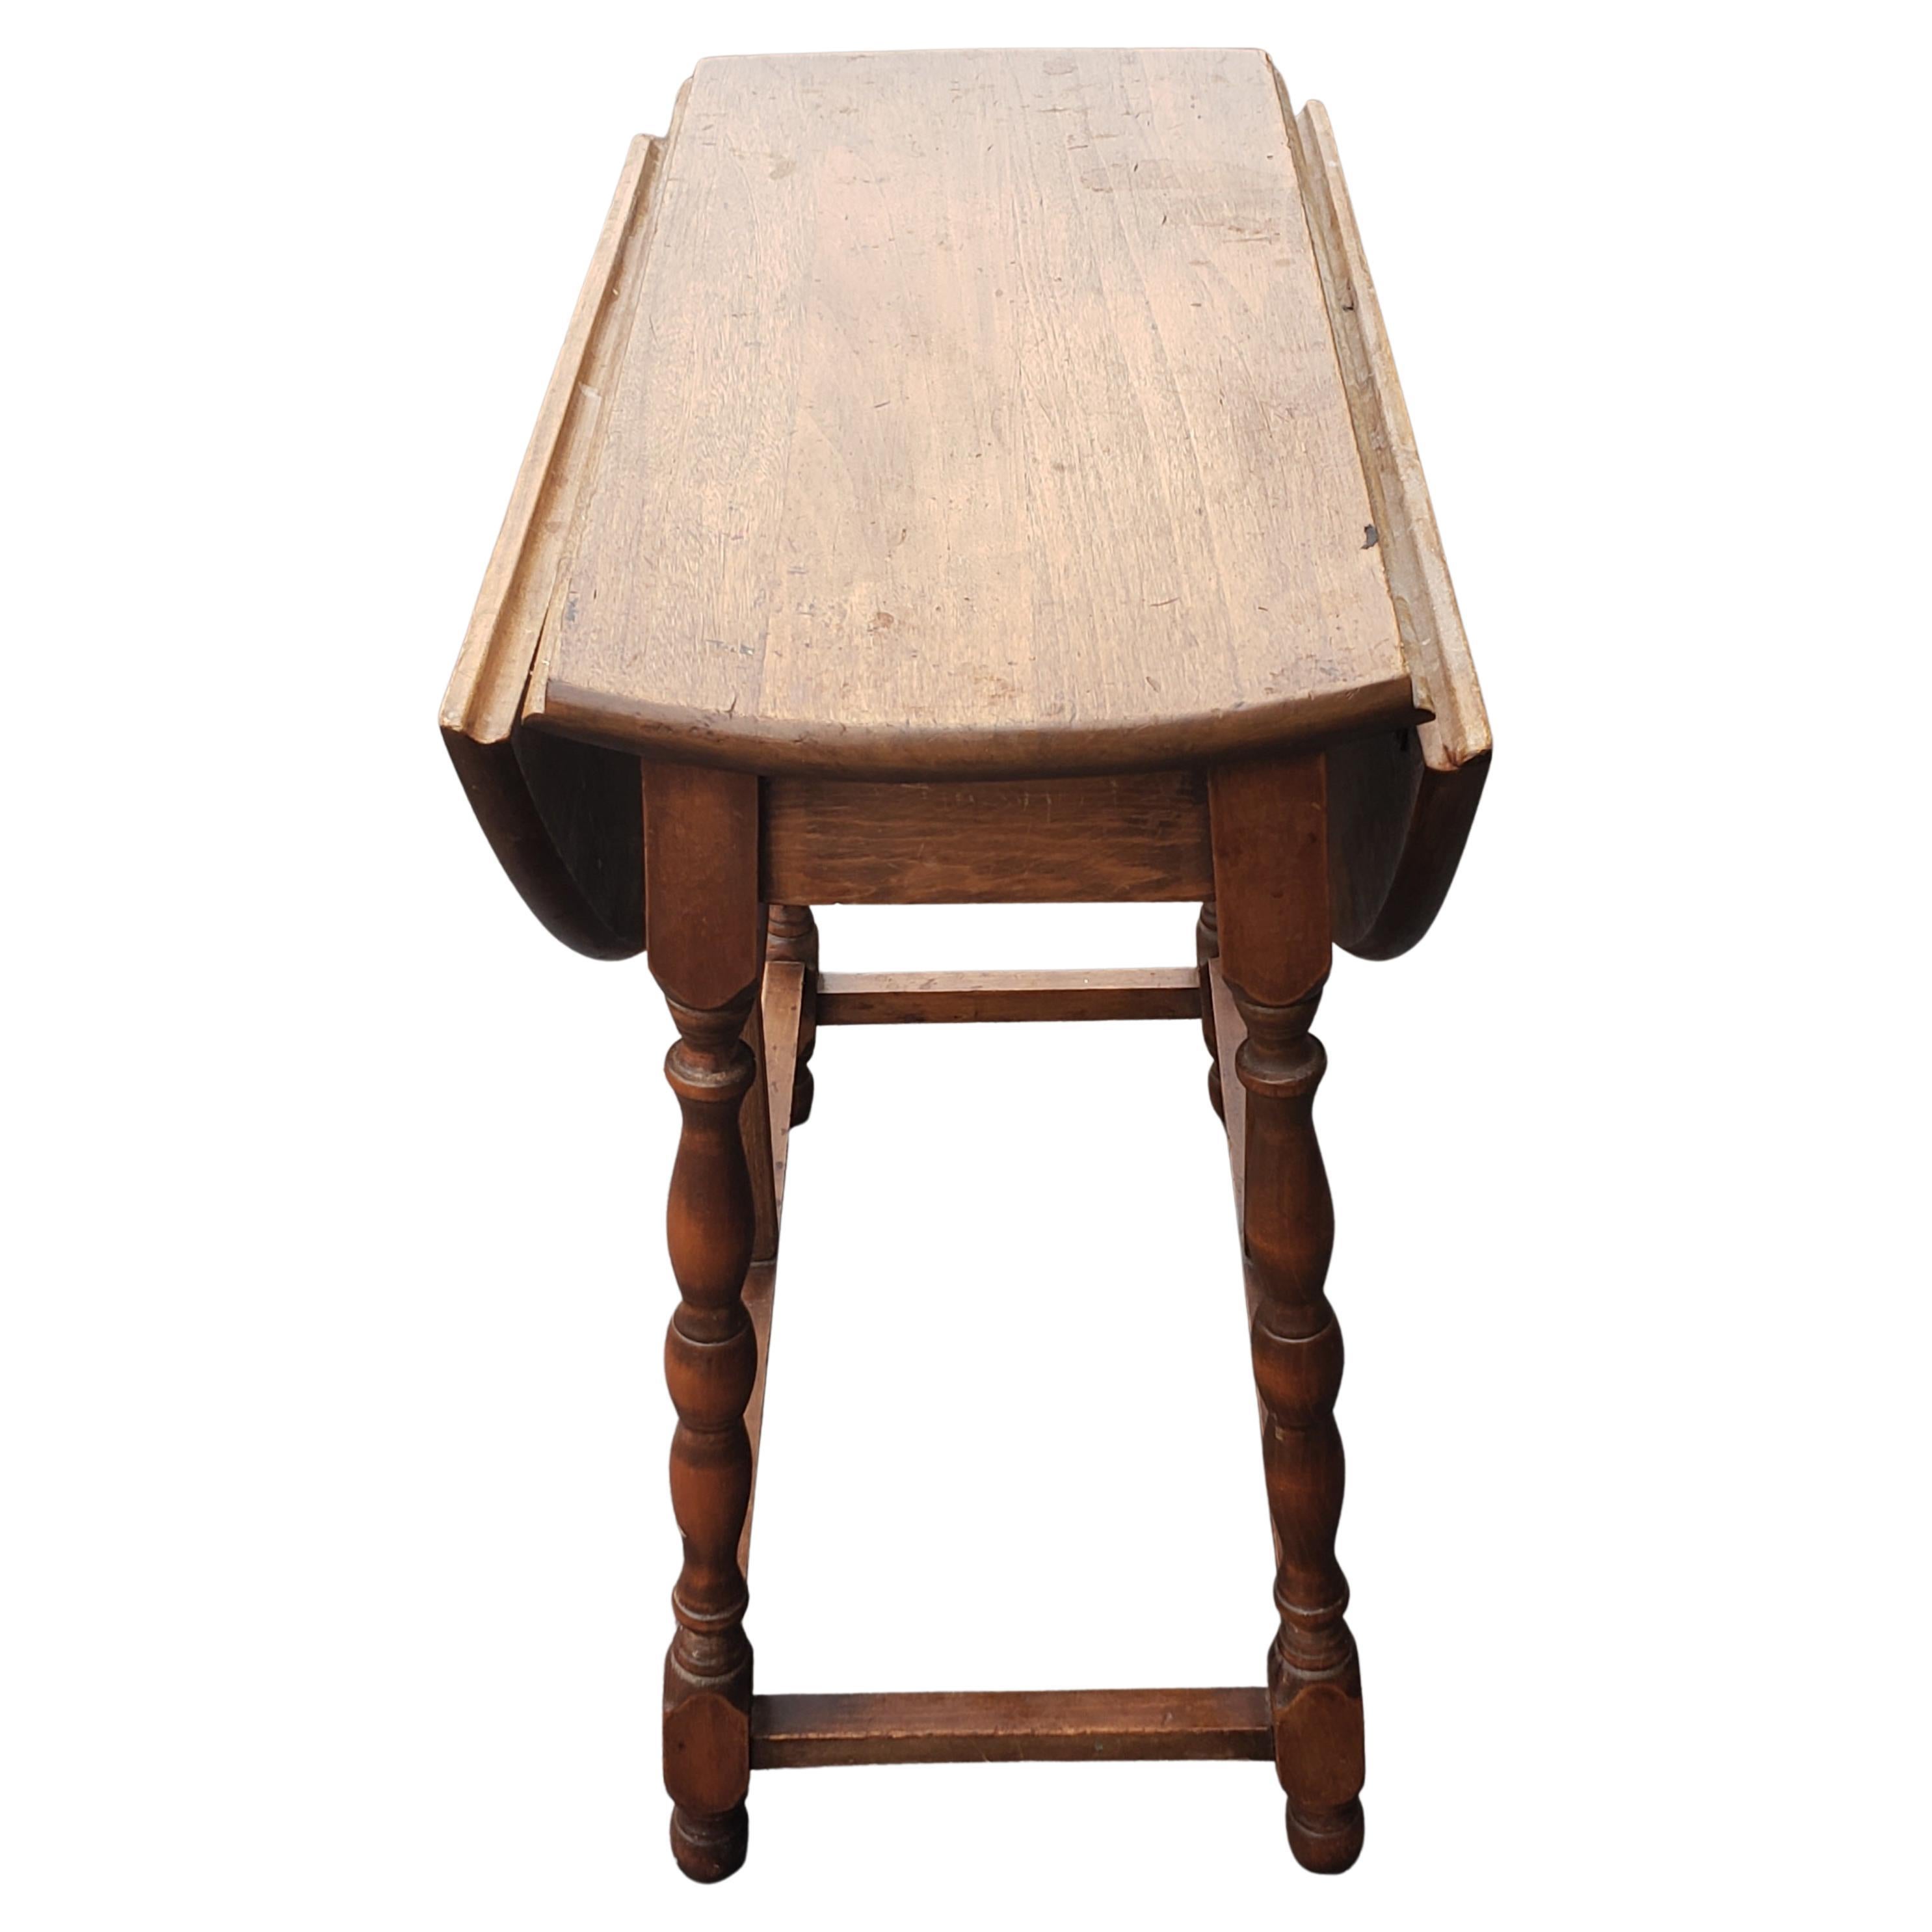 Vintage English solid oak drop leaf side table.
Measures: 25